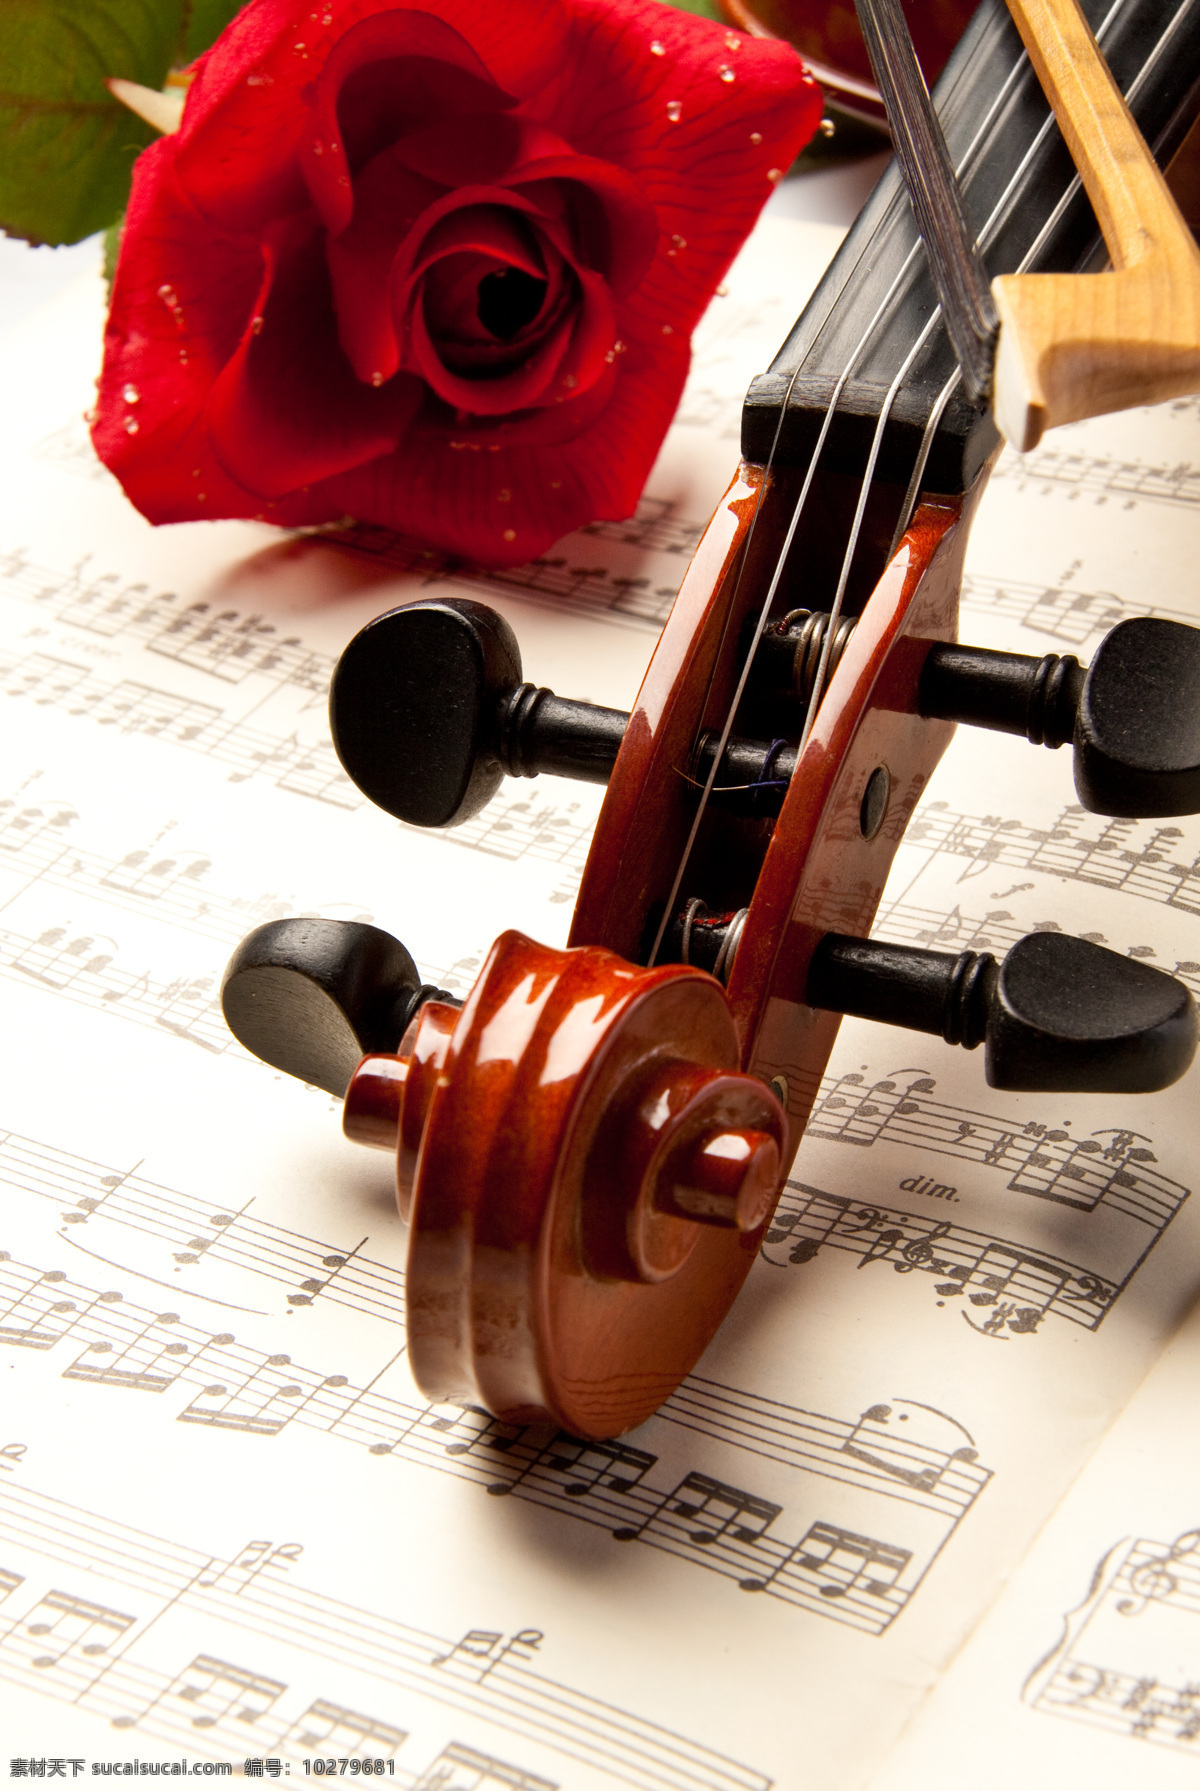 带 水珠 玫瑰 小提琴 音乐 乐器 影音娱乐 鲜花 生活百科